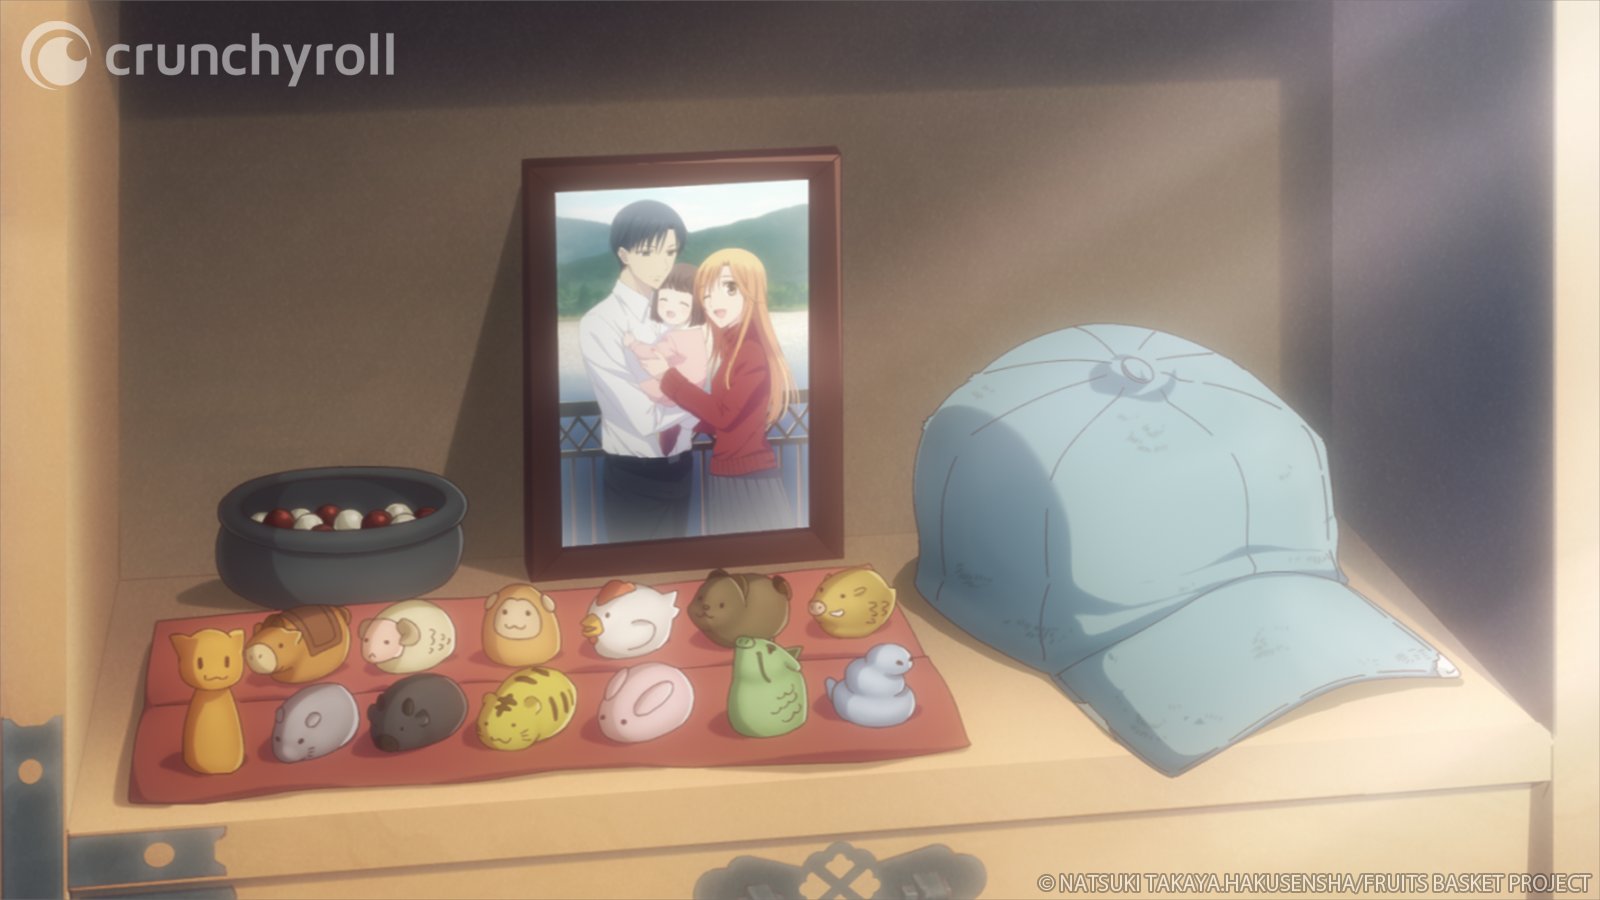 Crunchyroll ✨ #AnimeNextLevel on Twitter